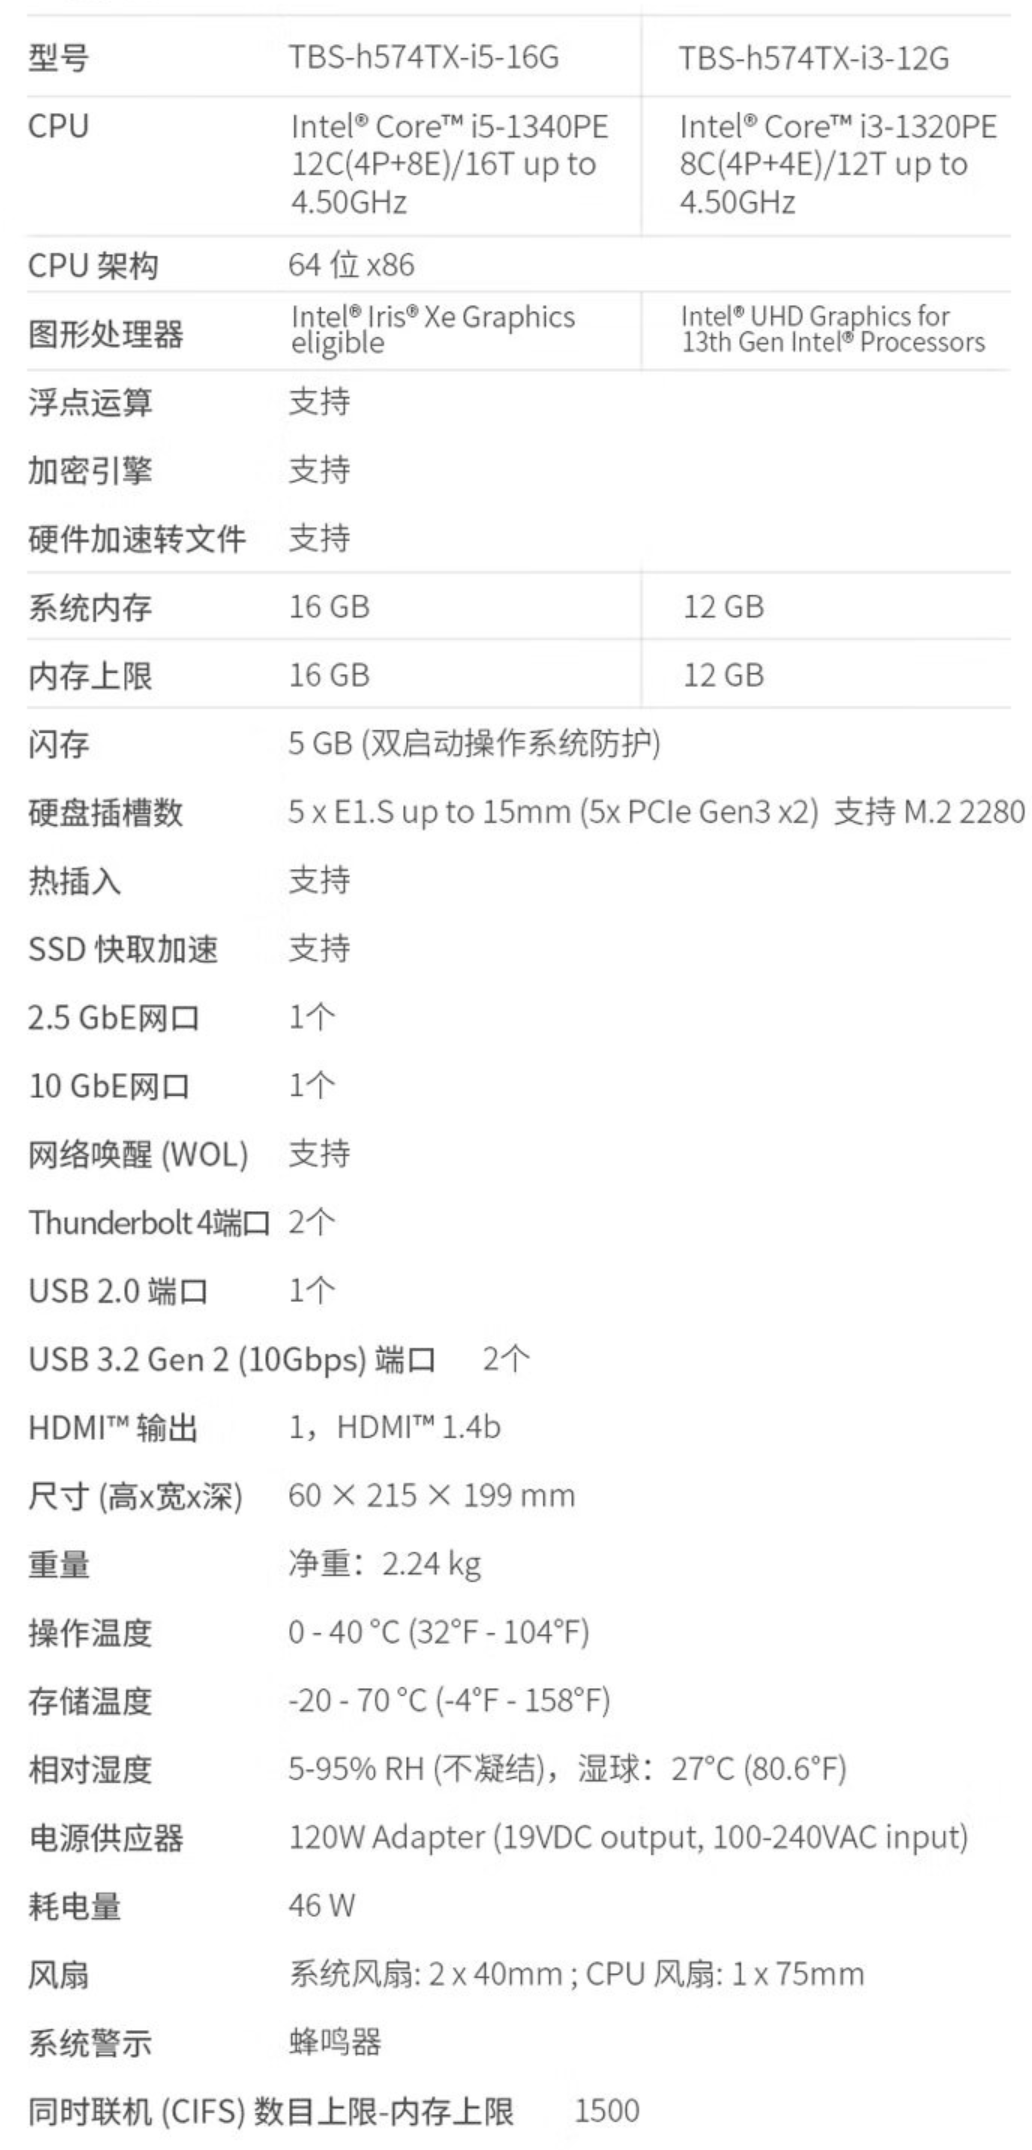 威联通 TBS-h574TX 全闪存 NAS 上架：13 代 i5 / 5 SSD 插槽，13880 元